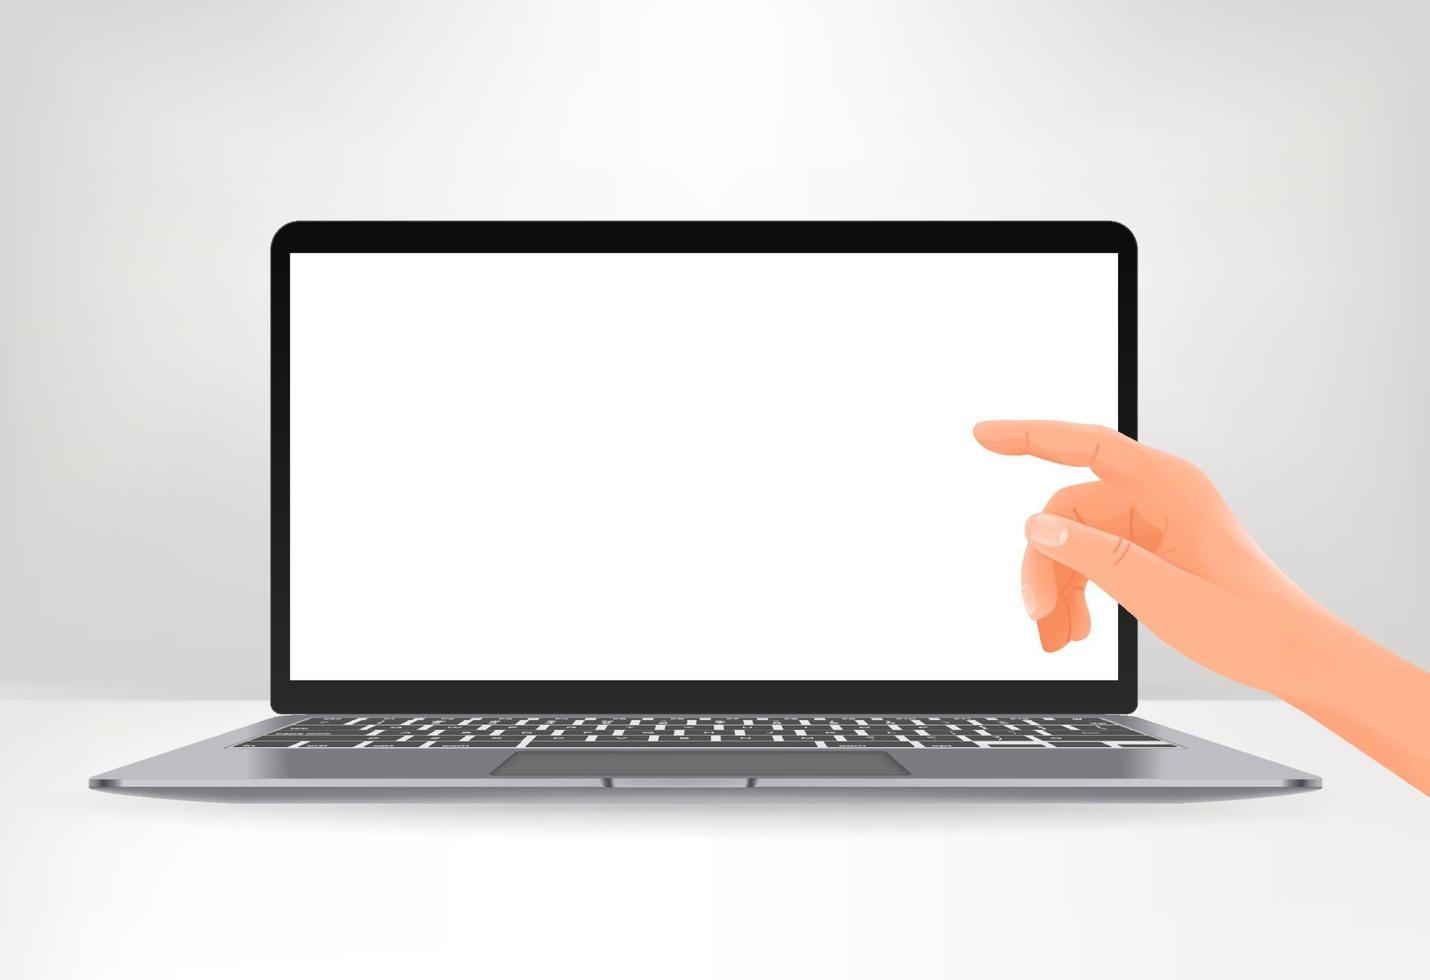 tela do laptop moderno com a mão apontando para a tela. maquete de vetor com tela em branco